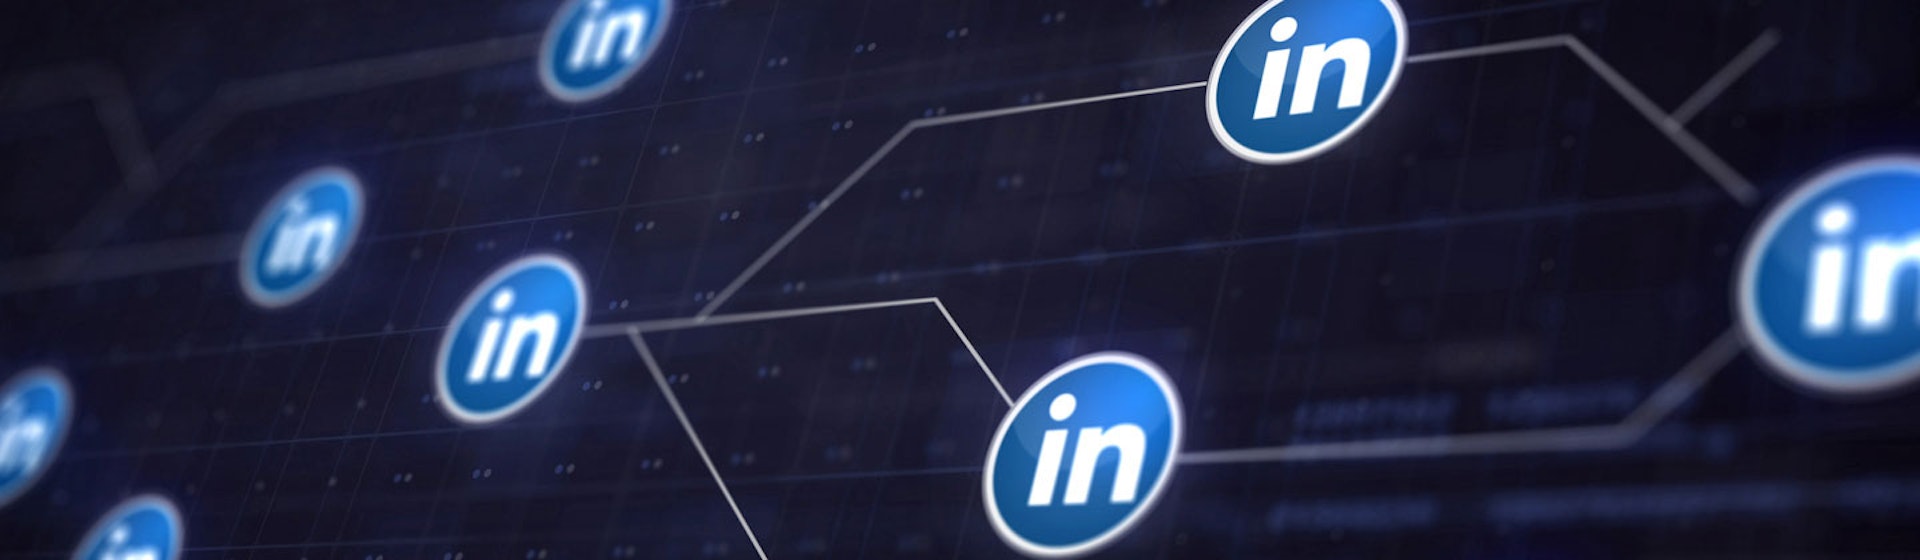 Ventajas y desventajas de LinkedIn: ¿merece la pena usar esta red social profesional?